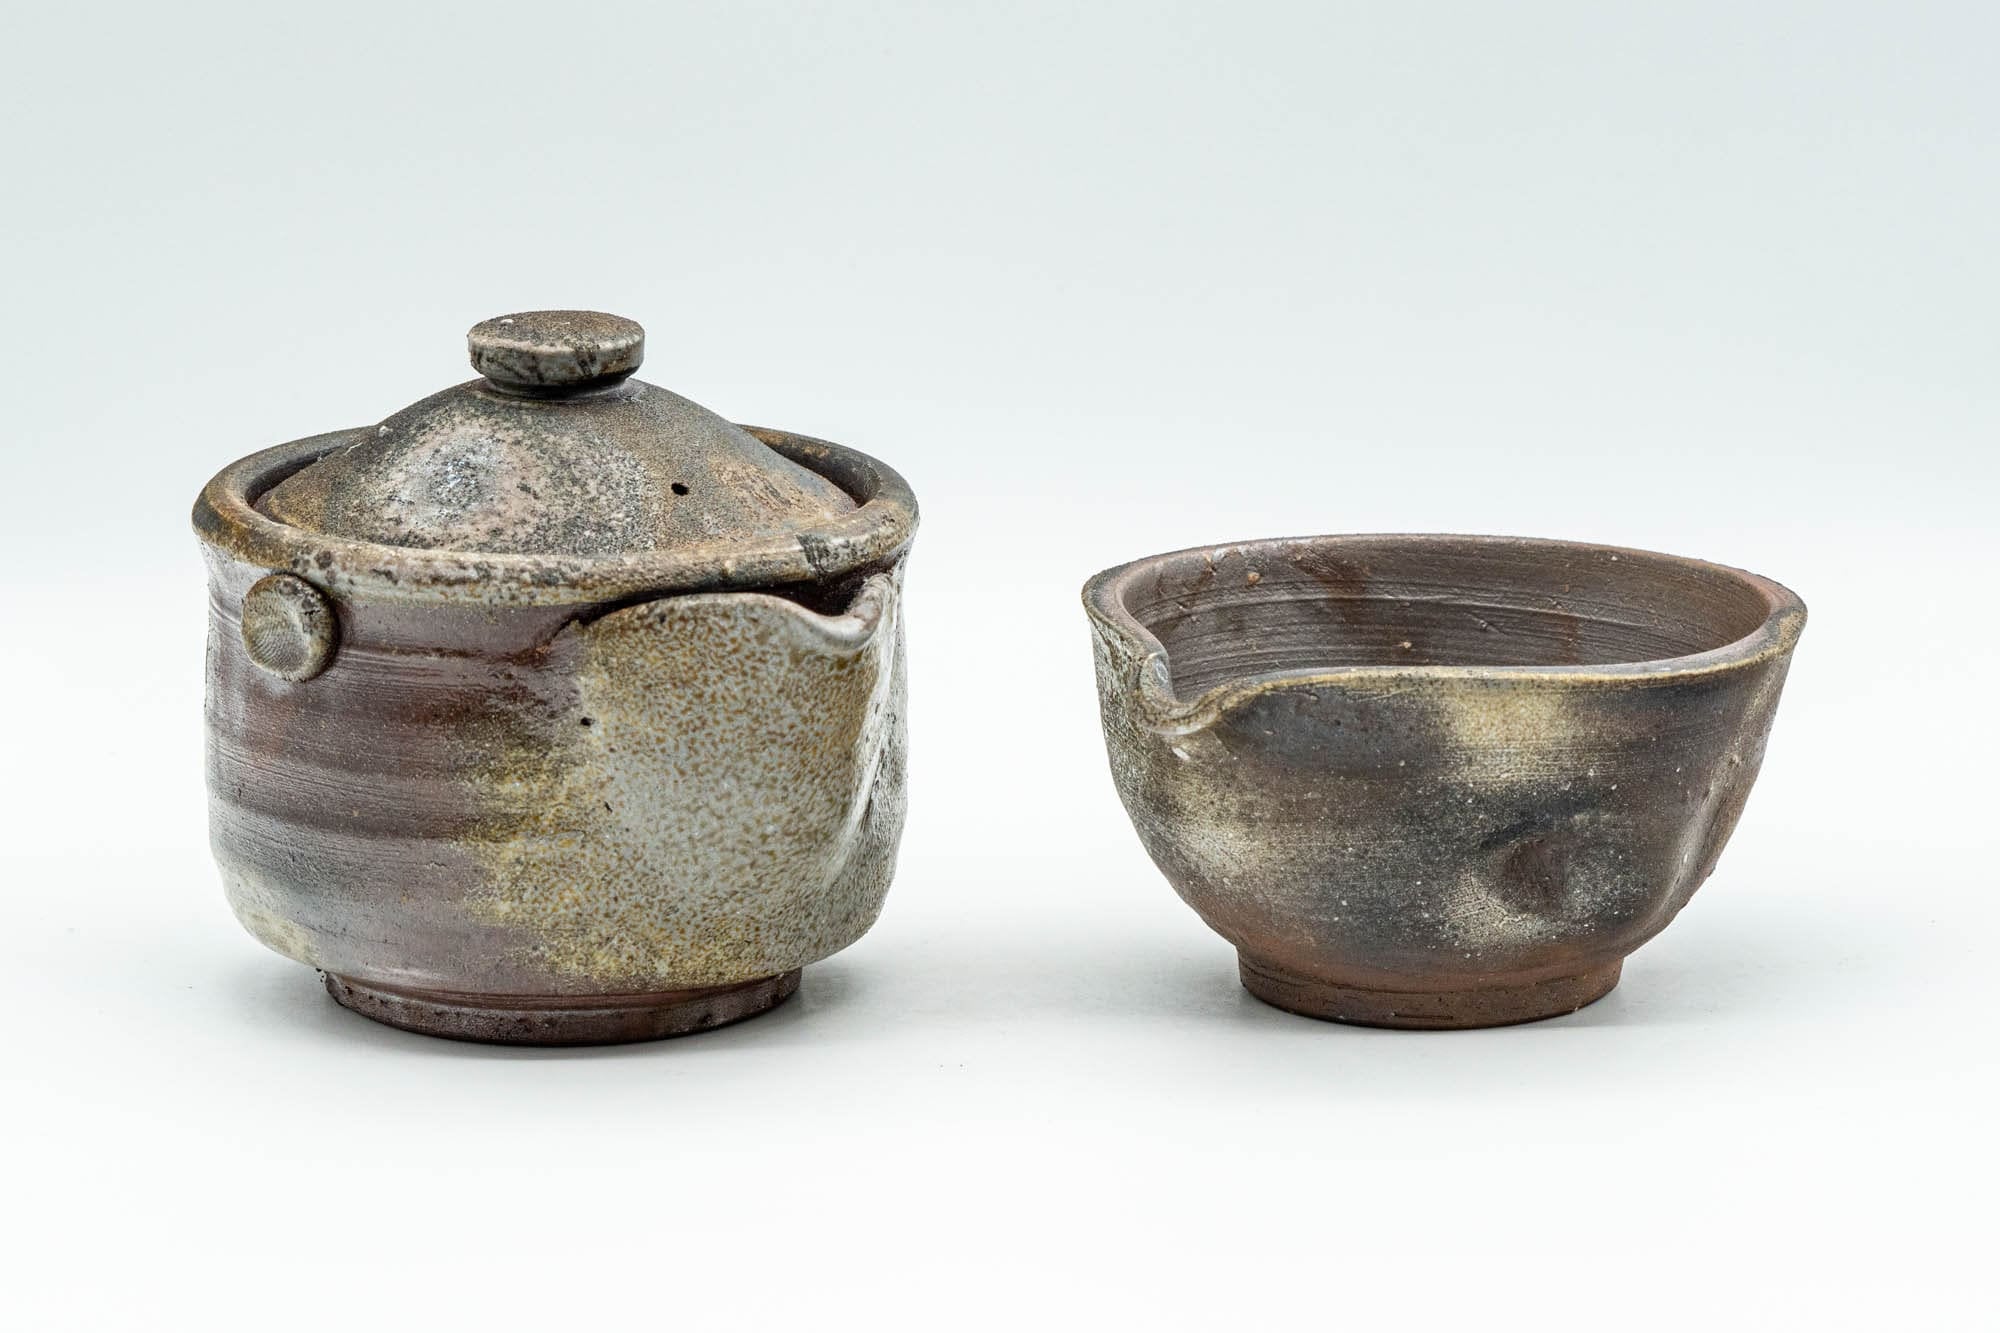 Japanese Tea Set - Wood-fired Bizen-yaki Do-ake Houhin Teapot with Katakuchi Yuzamashi Water Cooler